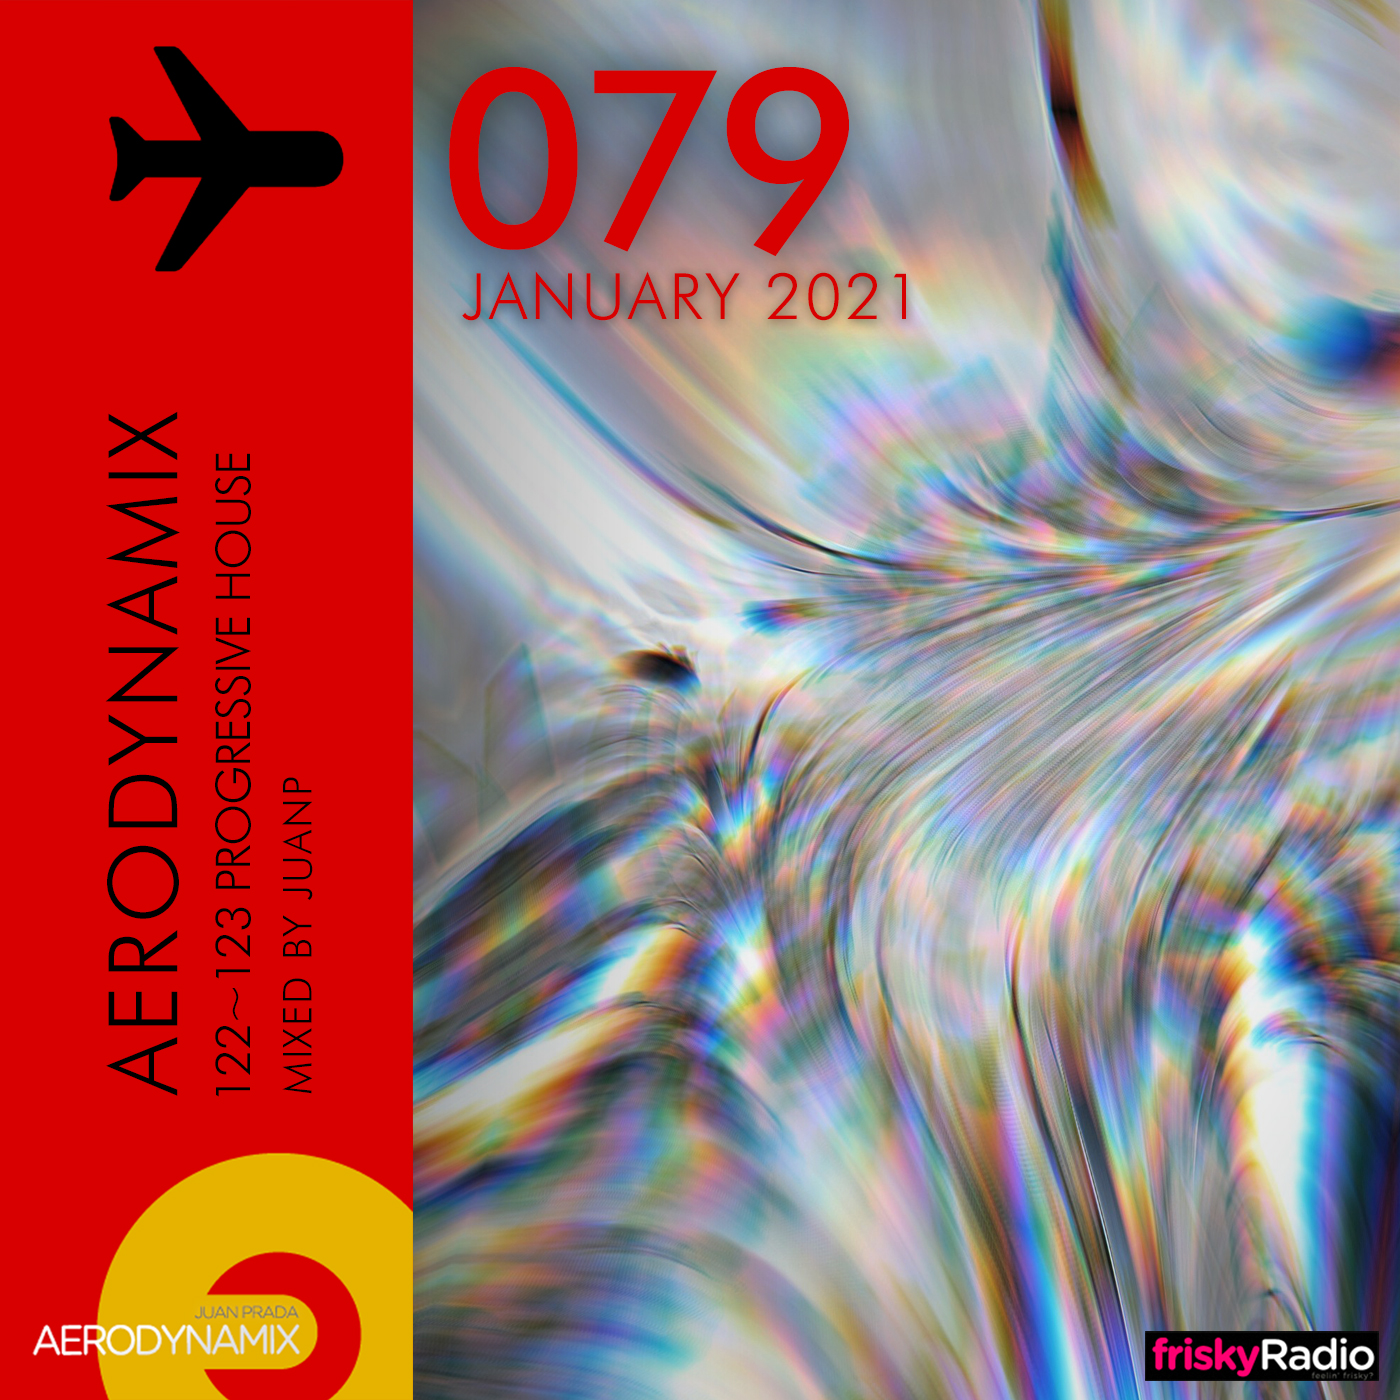 Aerodynamix 079 @ Frisky Radio January 2021 mixed by JuanP